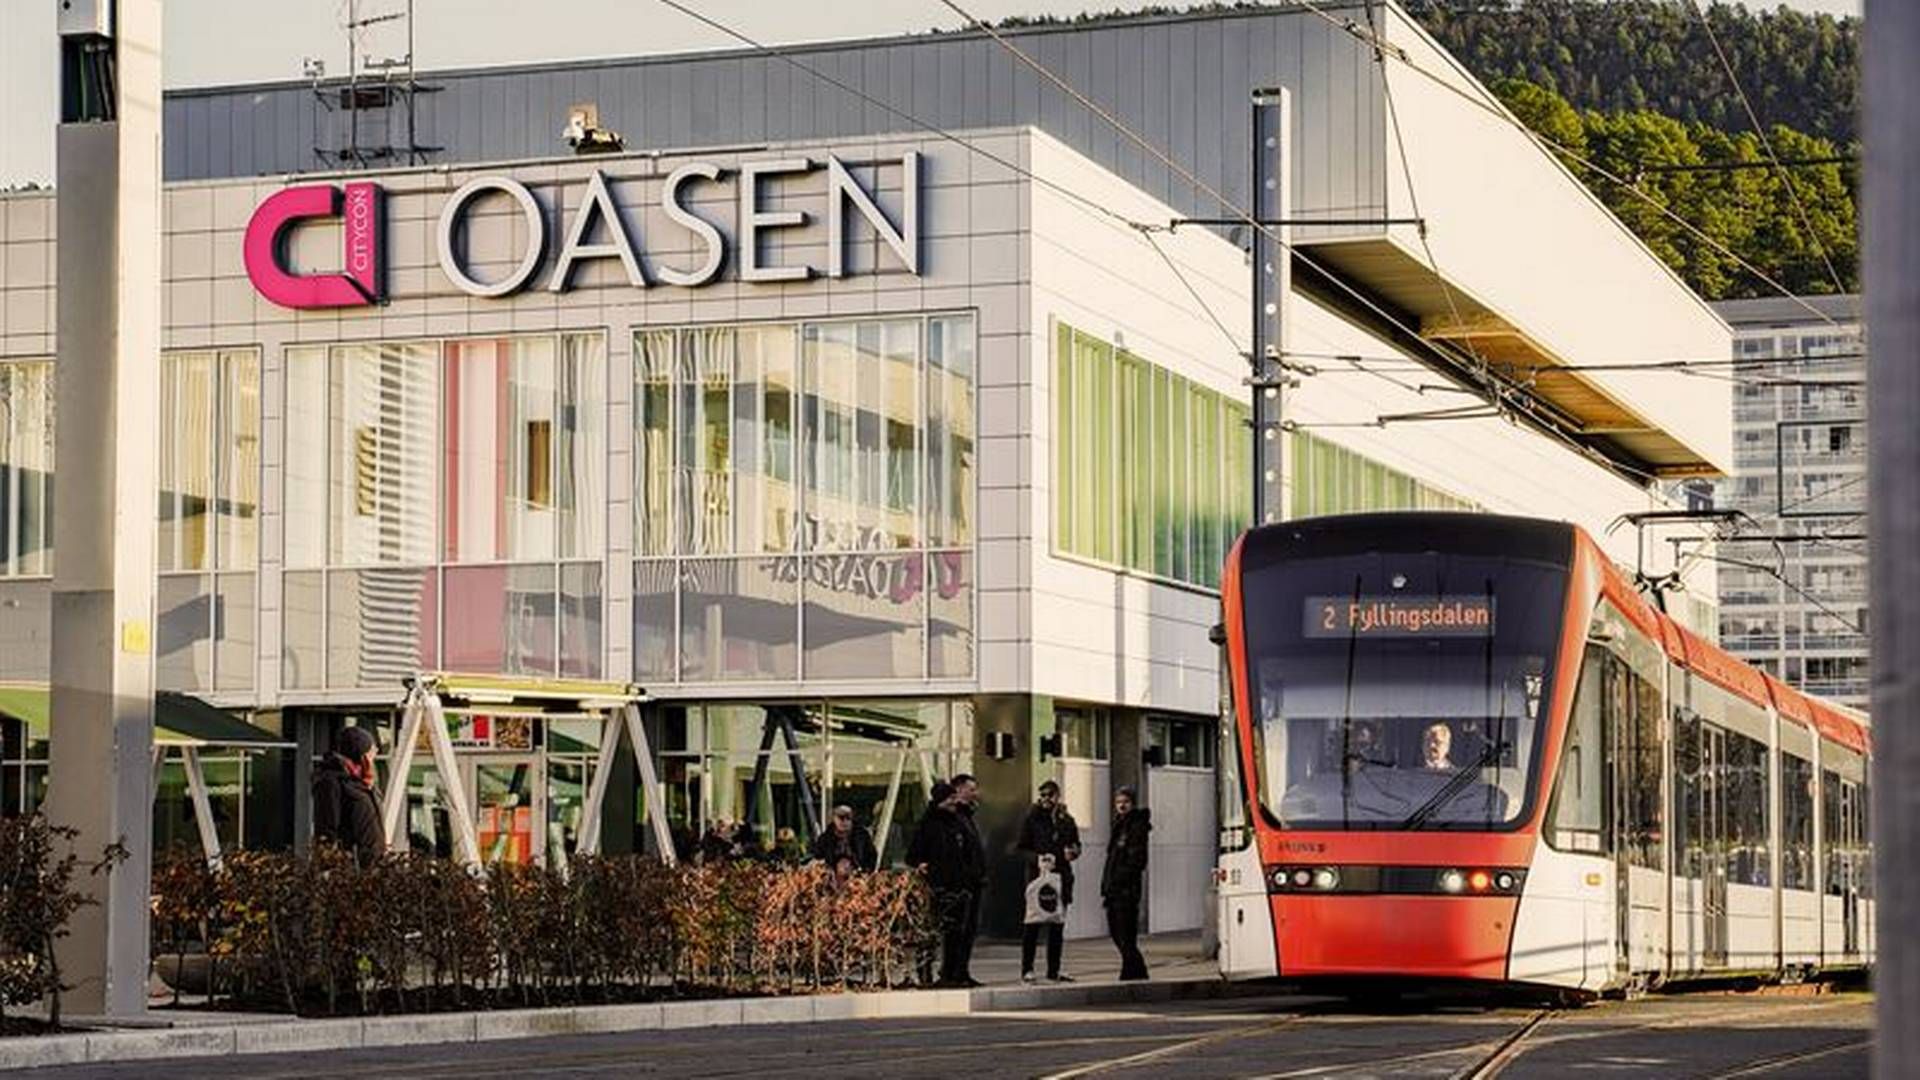 Bybanen forbi Oasen får mye av æren for økt besøk og omsetning. | Foto: Citycon